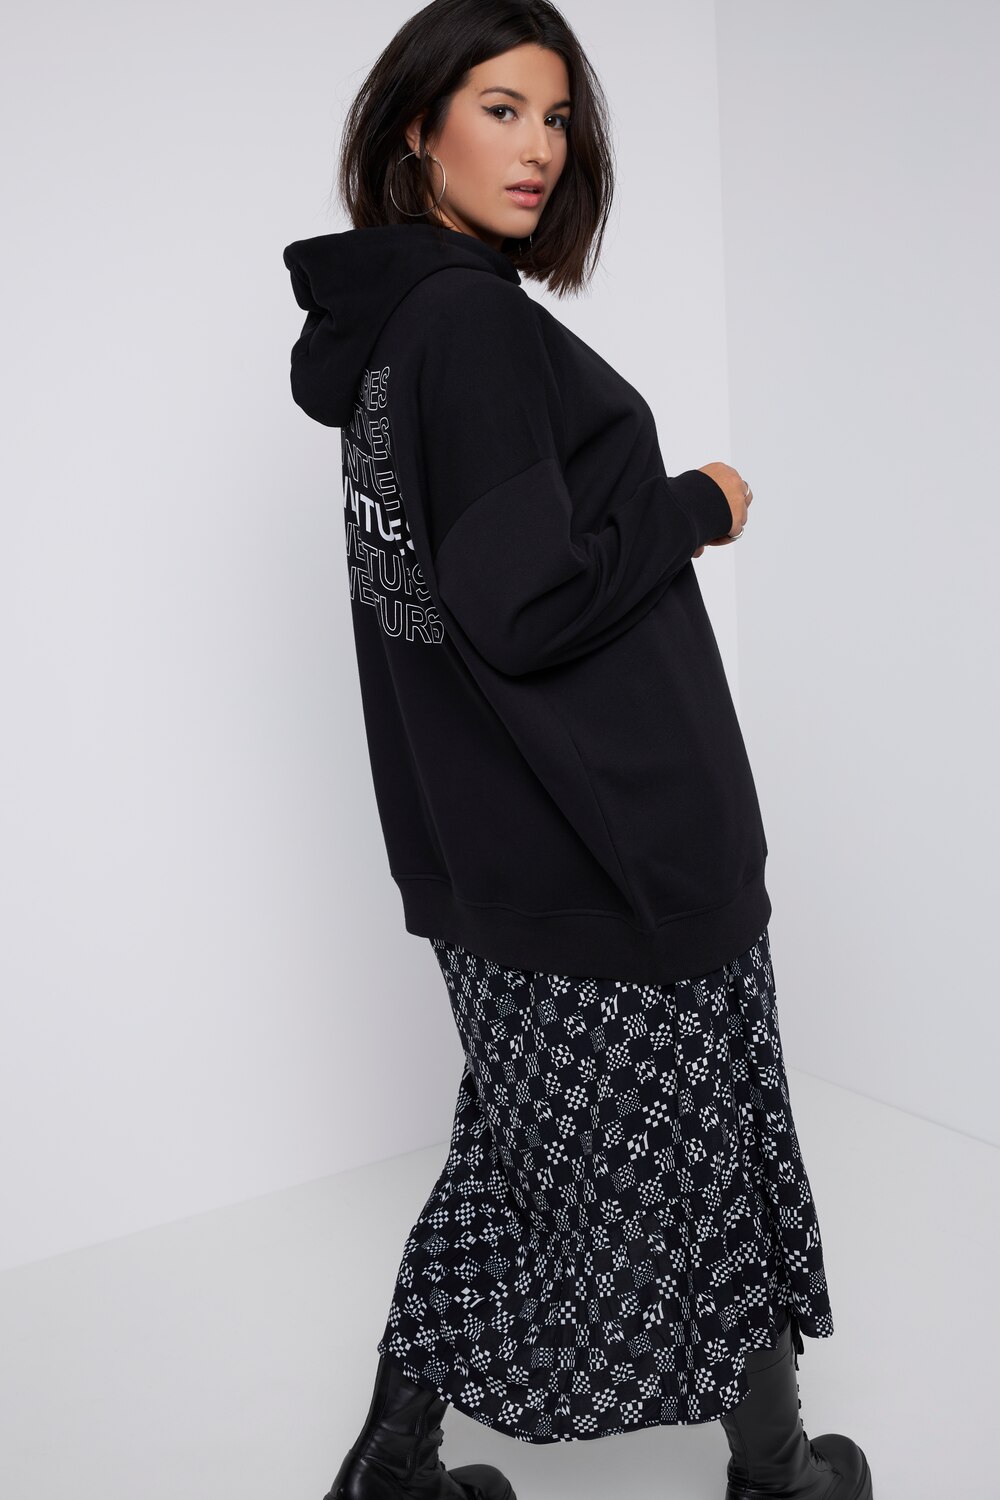 Grote Maten hoodie, Dames, zwart, Maat: 54/56, Katoen/Polyester, Studio Untold